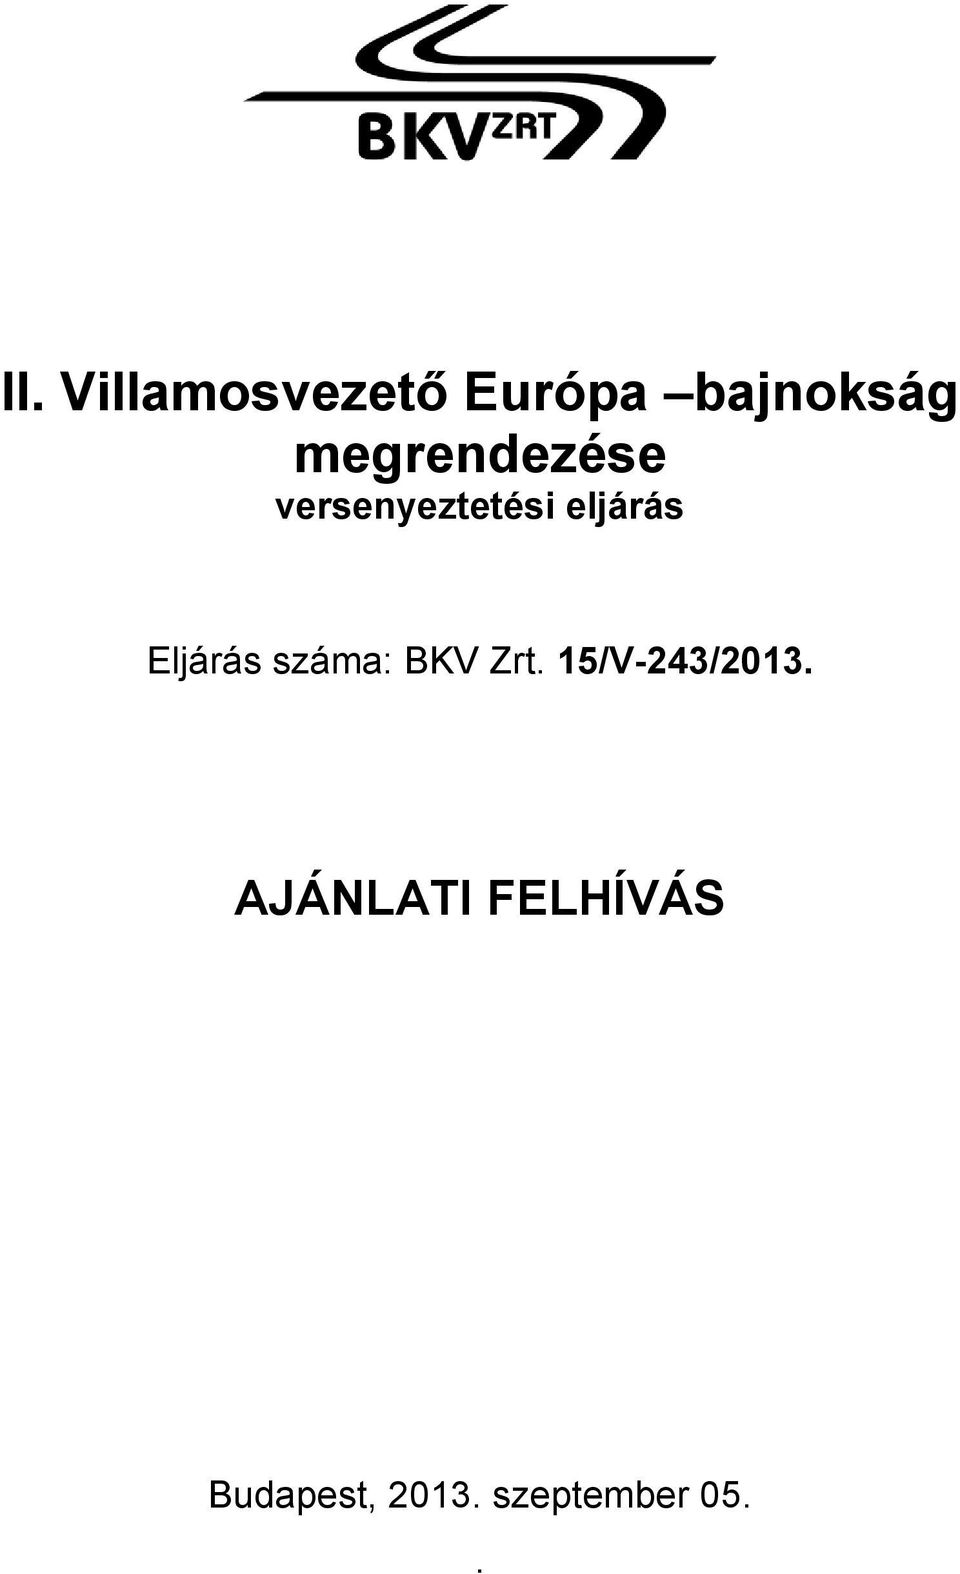 Eljárás száma: BKV Zrt. 15/V-243/2013.